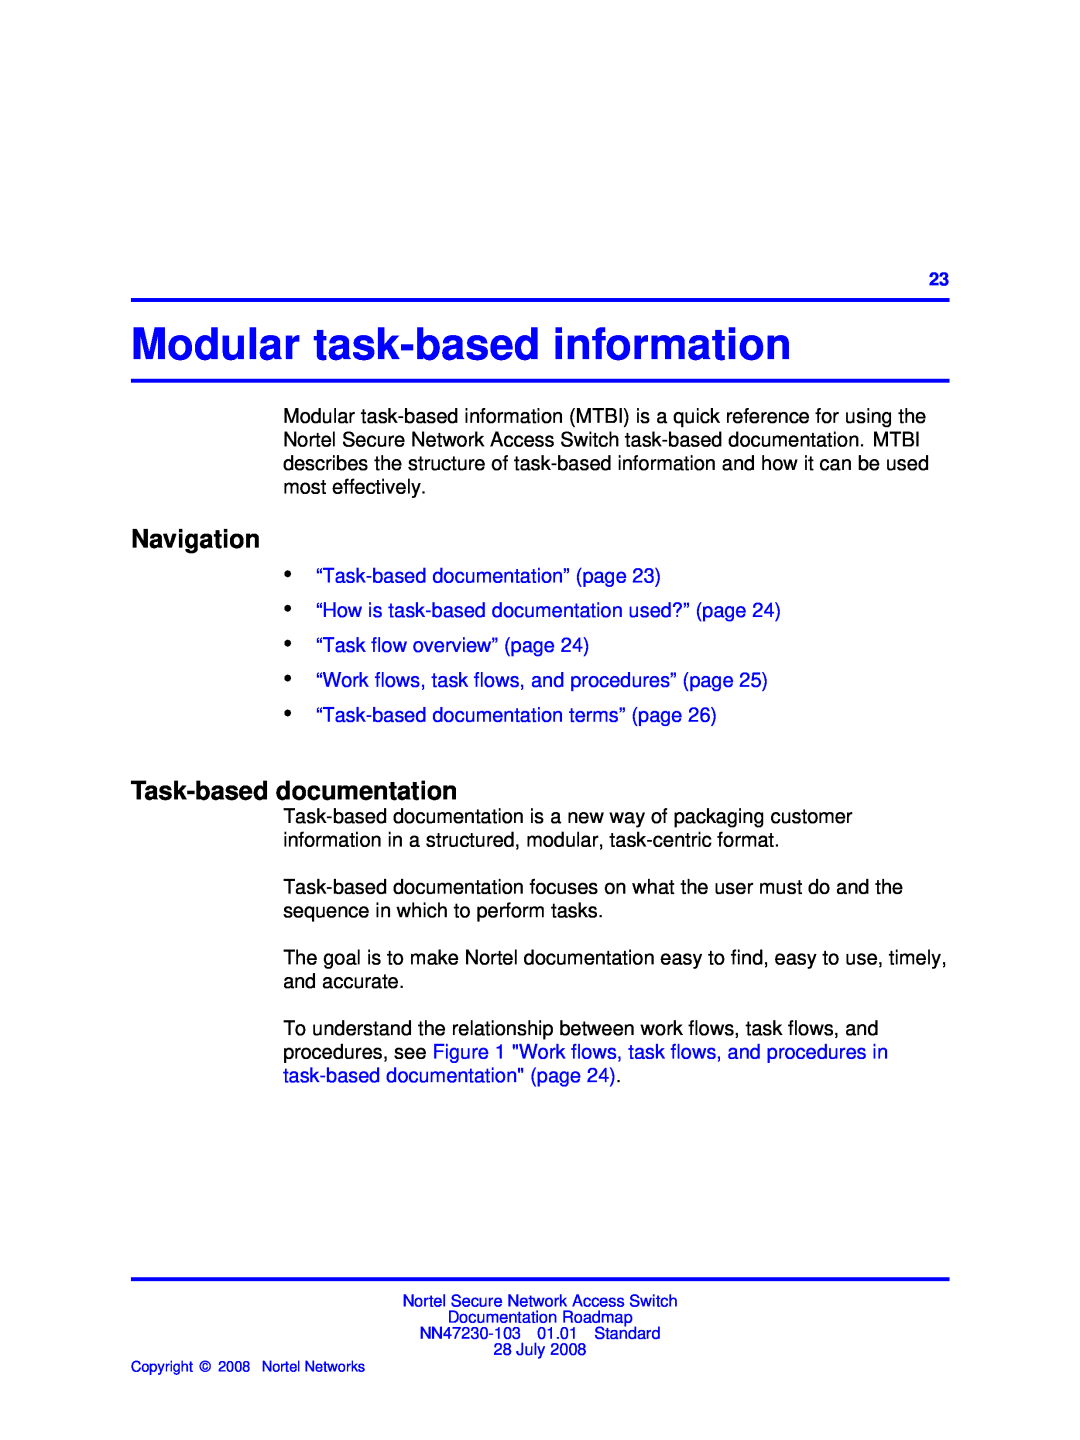 Nortel Networks NN47230-103 Modular task-based information, “Task-based documentation” page, “Task flow overview” page 